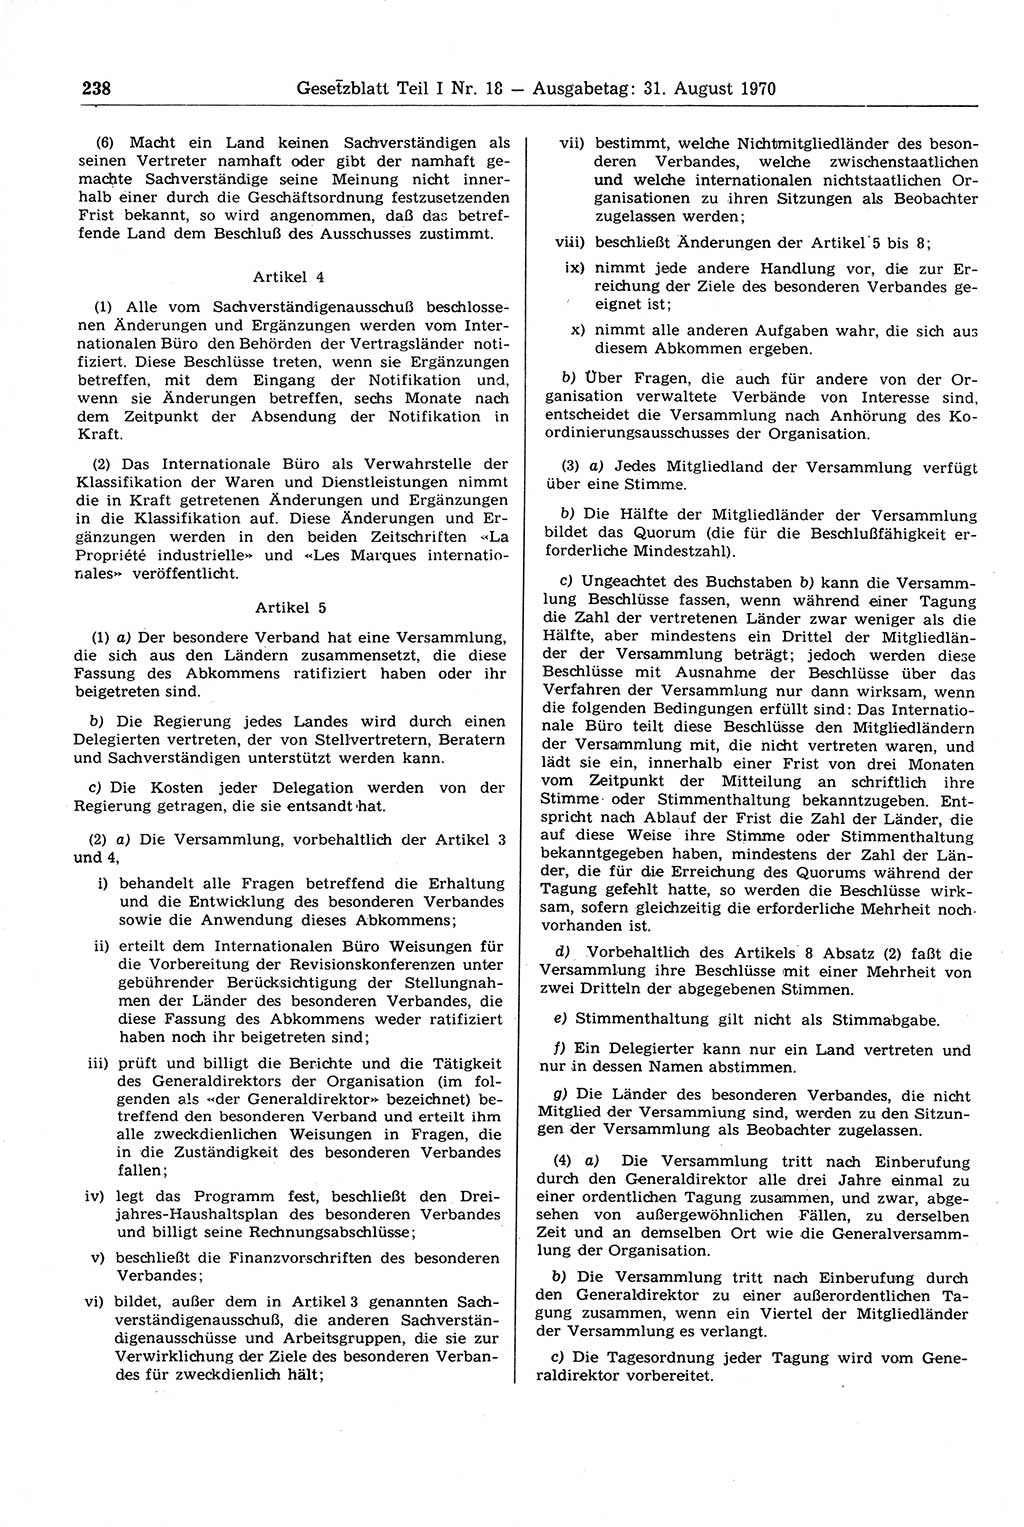 Gesetzblatt (GBl.) der Deutschen Demokratischen Republik (DDR) Teil Ⅰ 1970, Seite 238 (GBl. DDR Ⅰ 1970, S. 238)